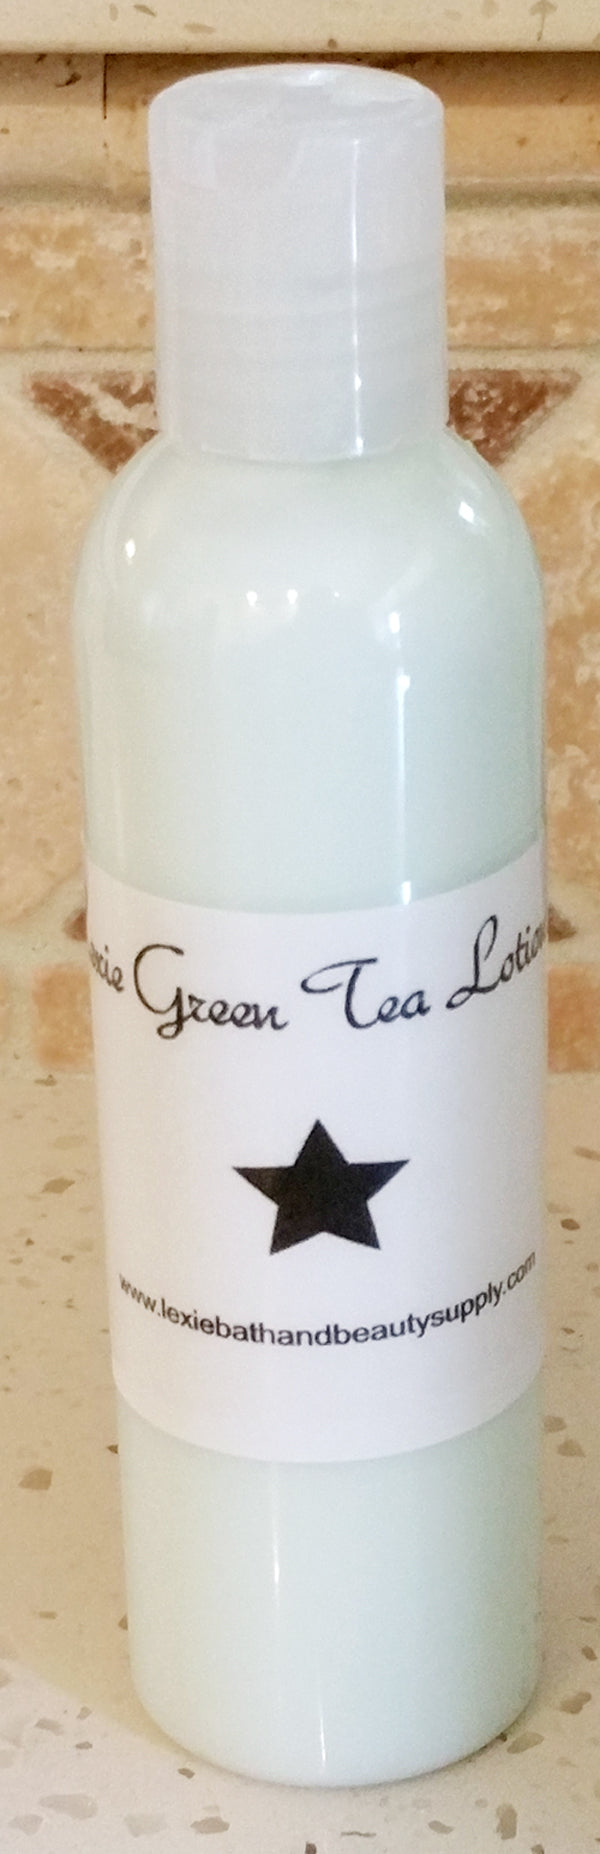 Lexie Green Tea Lotion - Lexie Bath and Beauty Supply